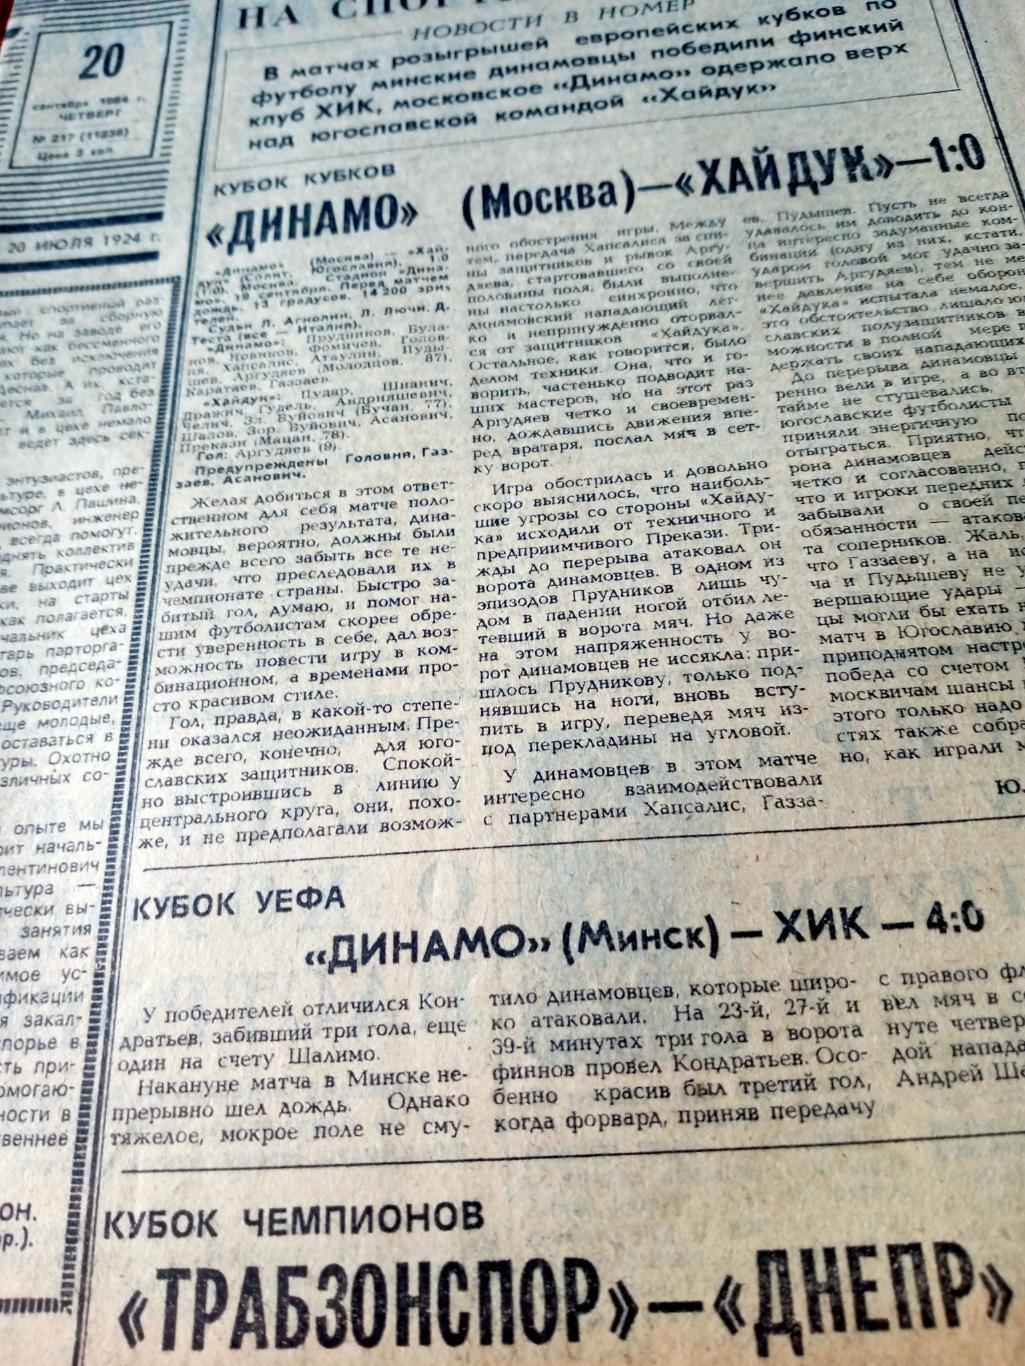 Еврокубки. Советский спорт. 1984 год. 20 сентября